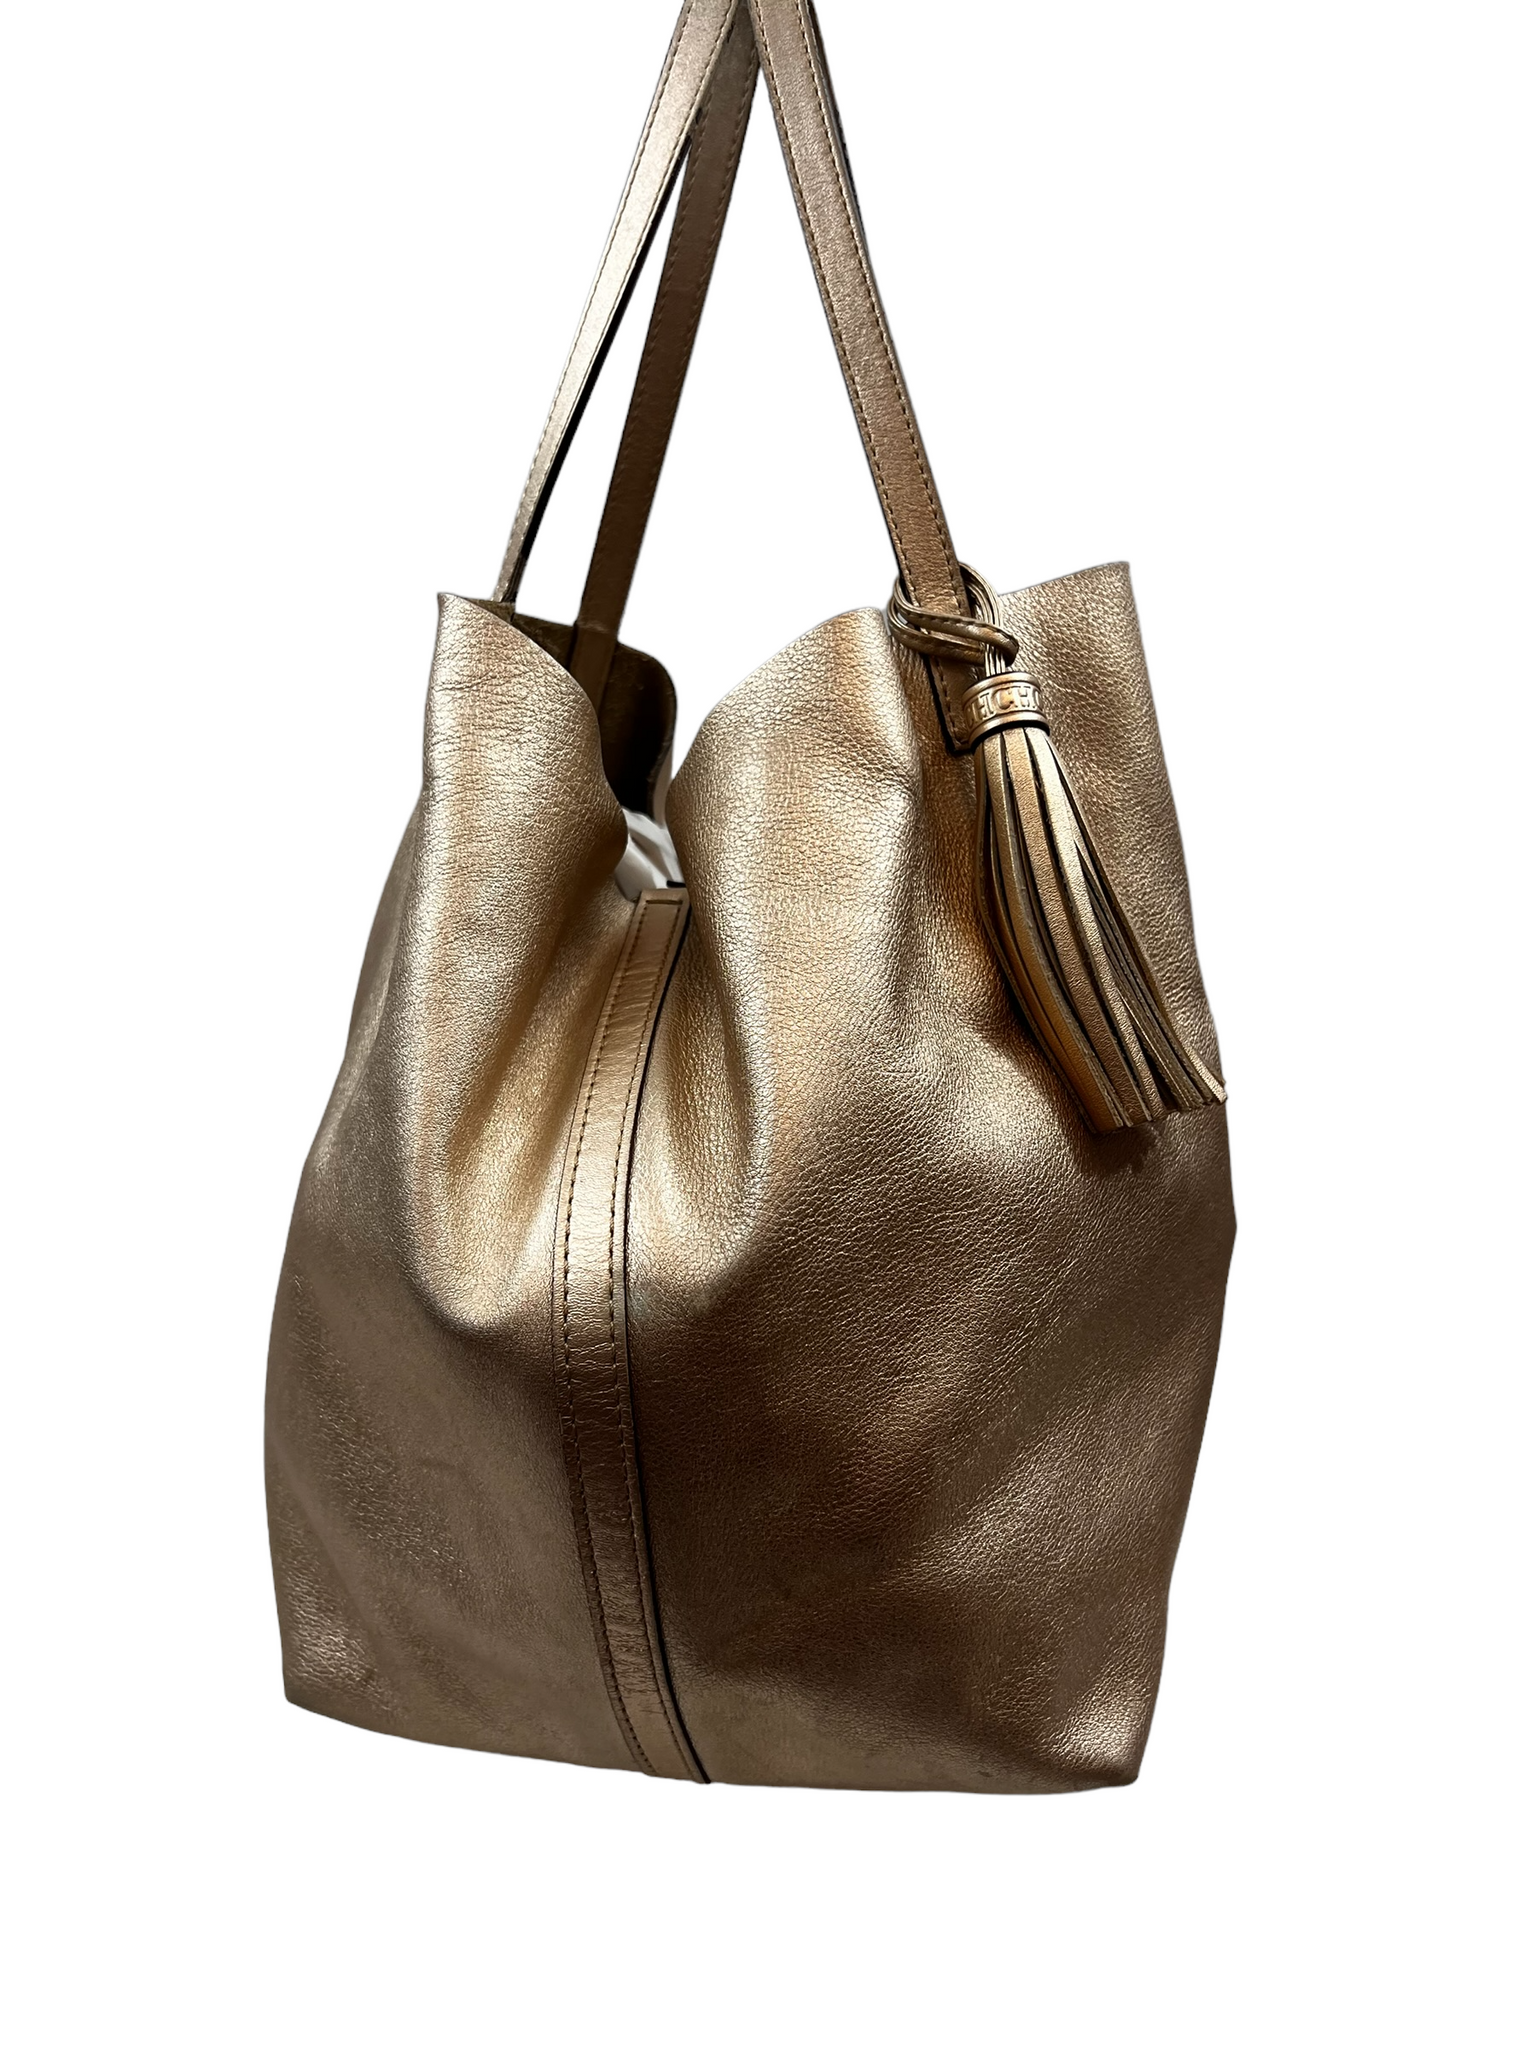 Carolina Herrera Matryoshka Gold Handbag – thankunext.us